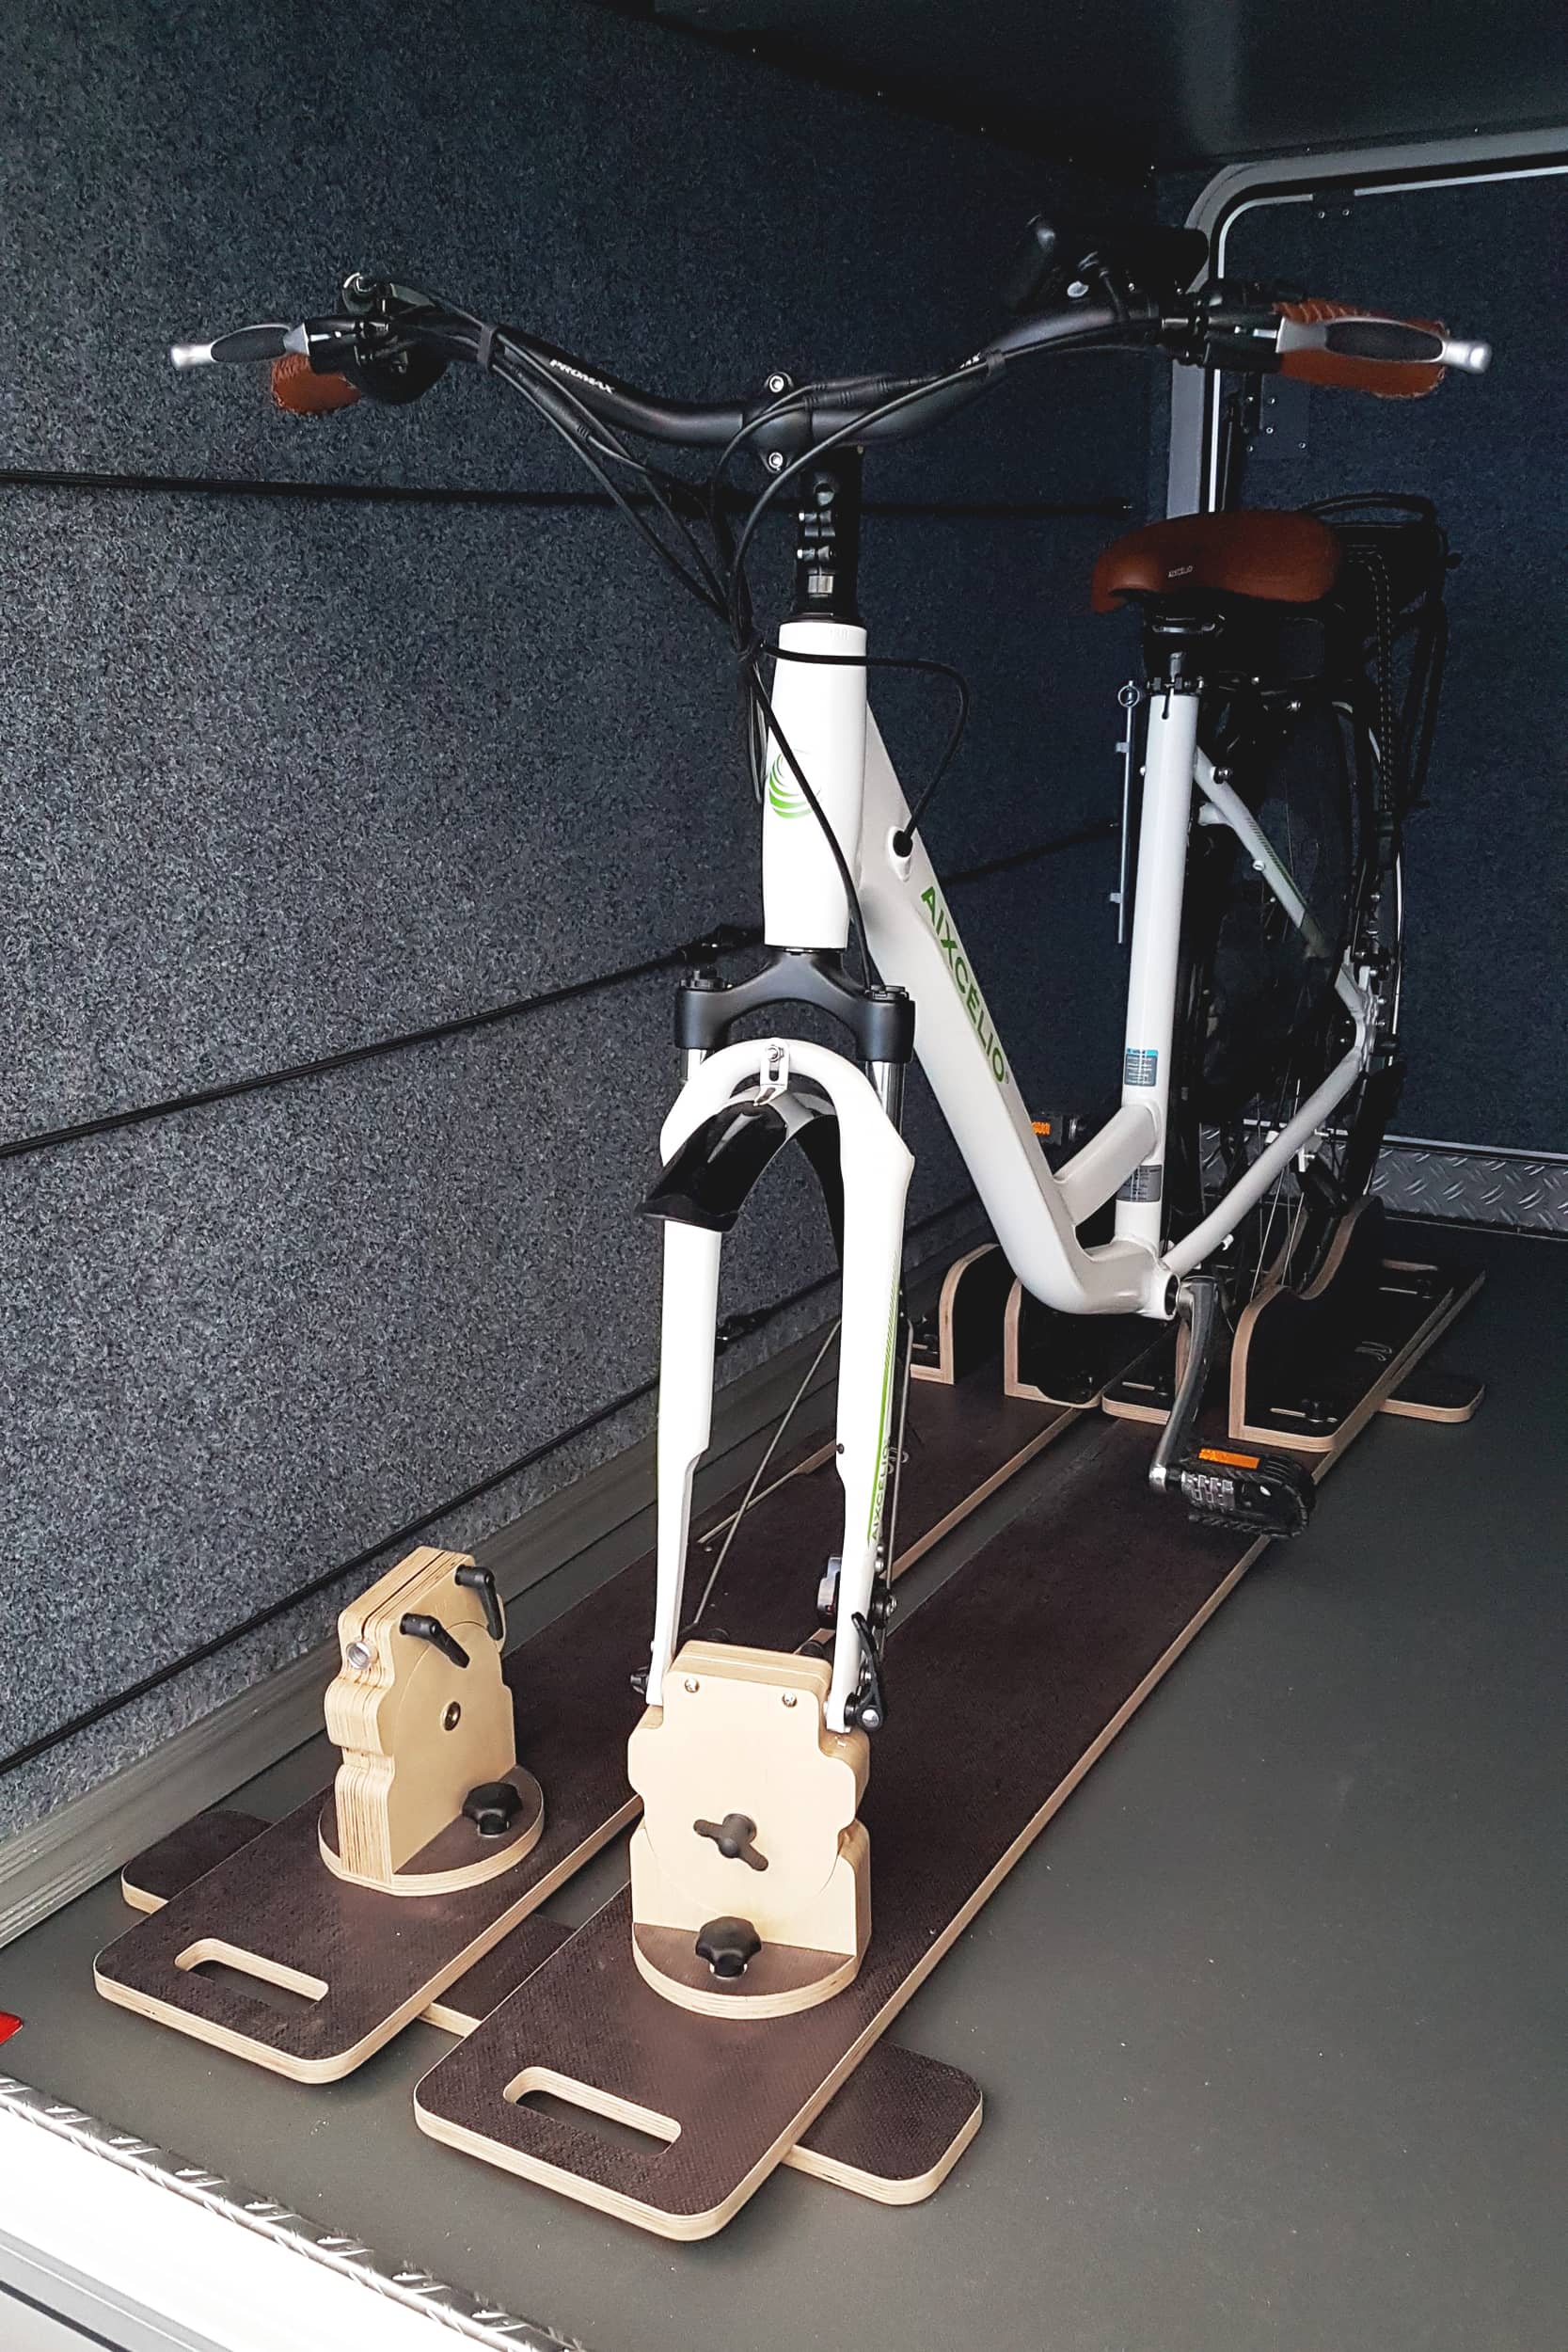 Porte-vélo intérieur de véhicule, Tidy système innovant by JV Agencement